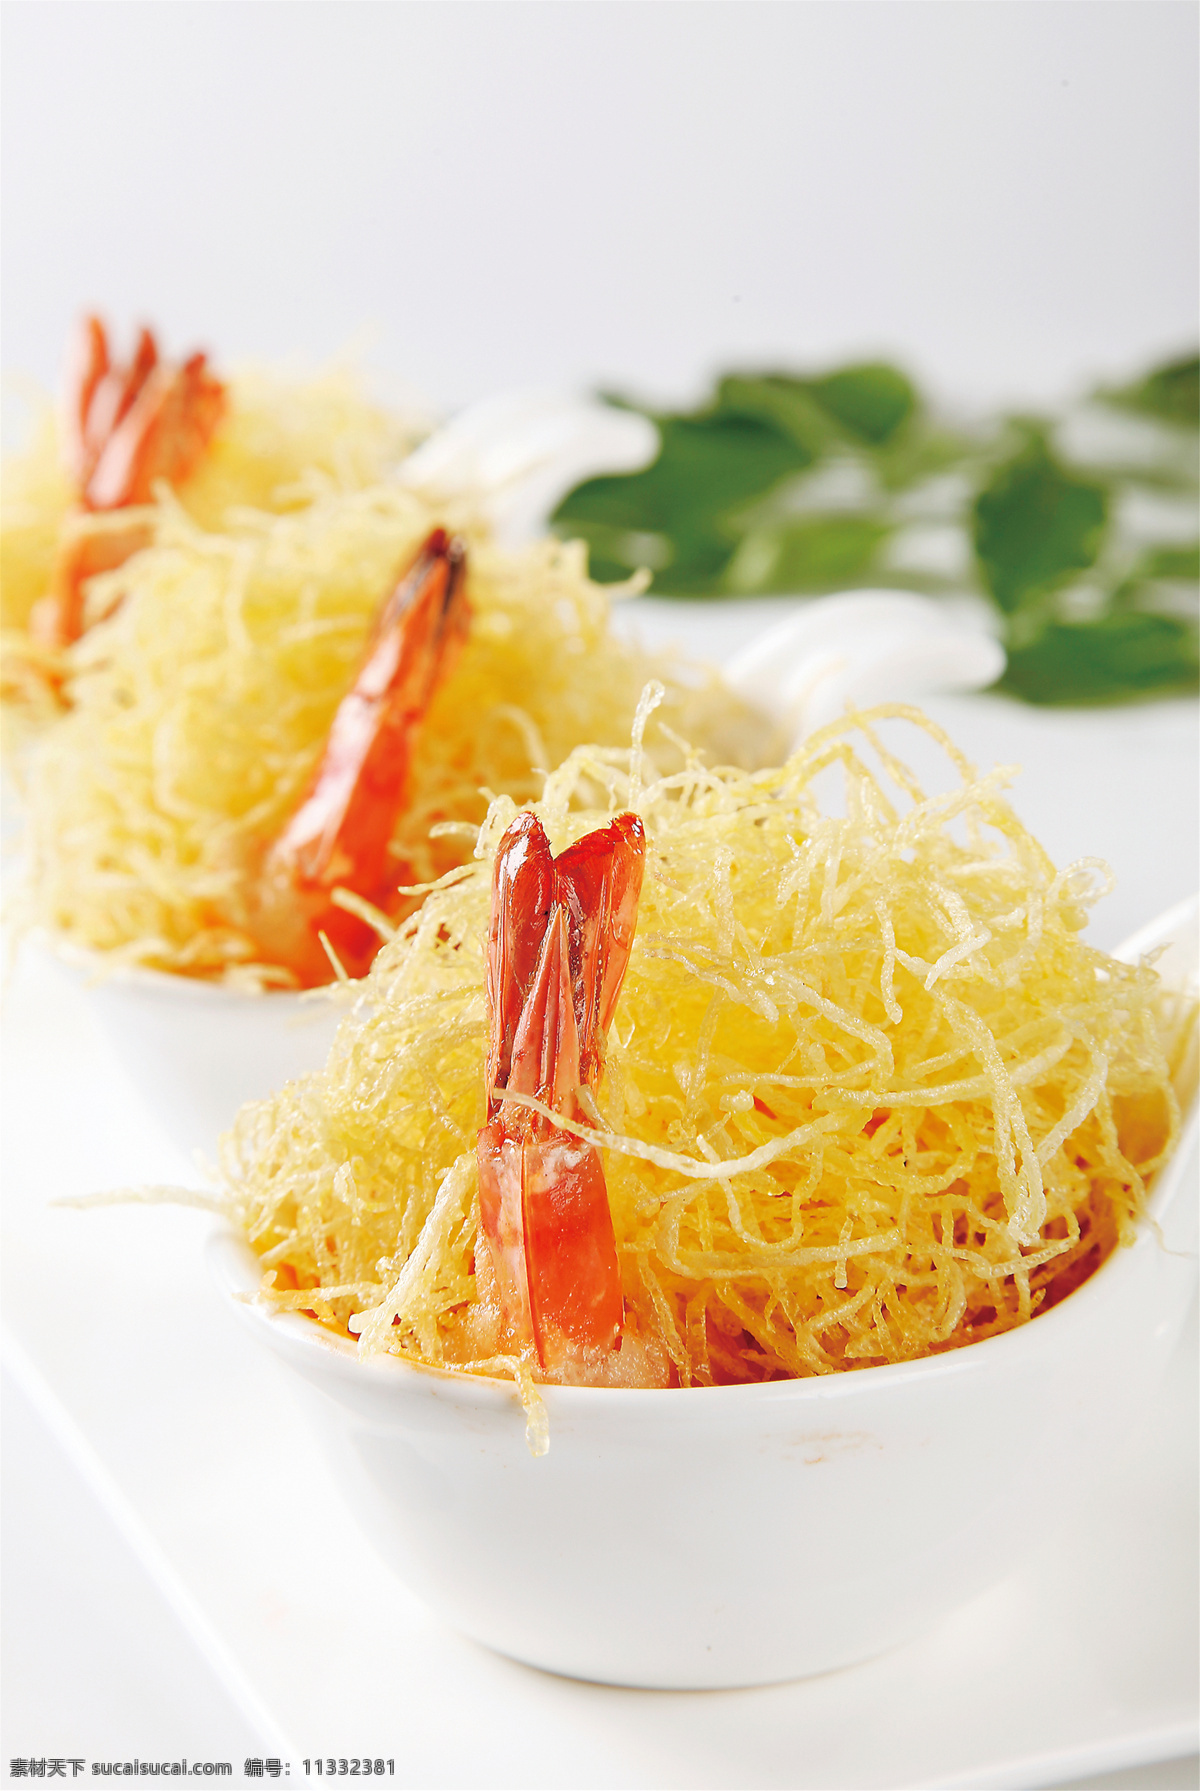 金丝虾球图片 金丝虾球 美食 传统美食 餐饮美食 高清菜谱用图